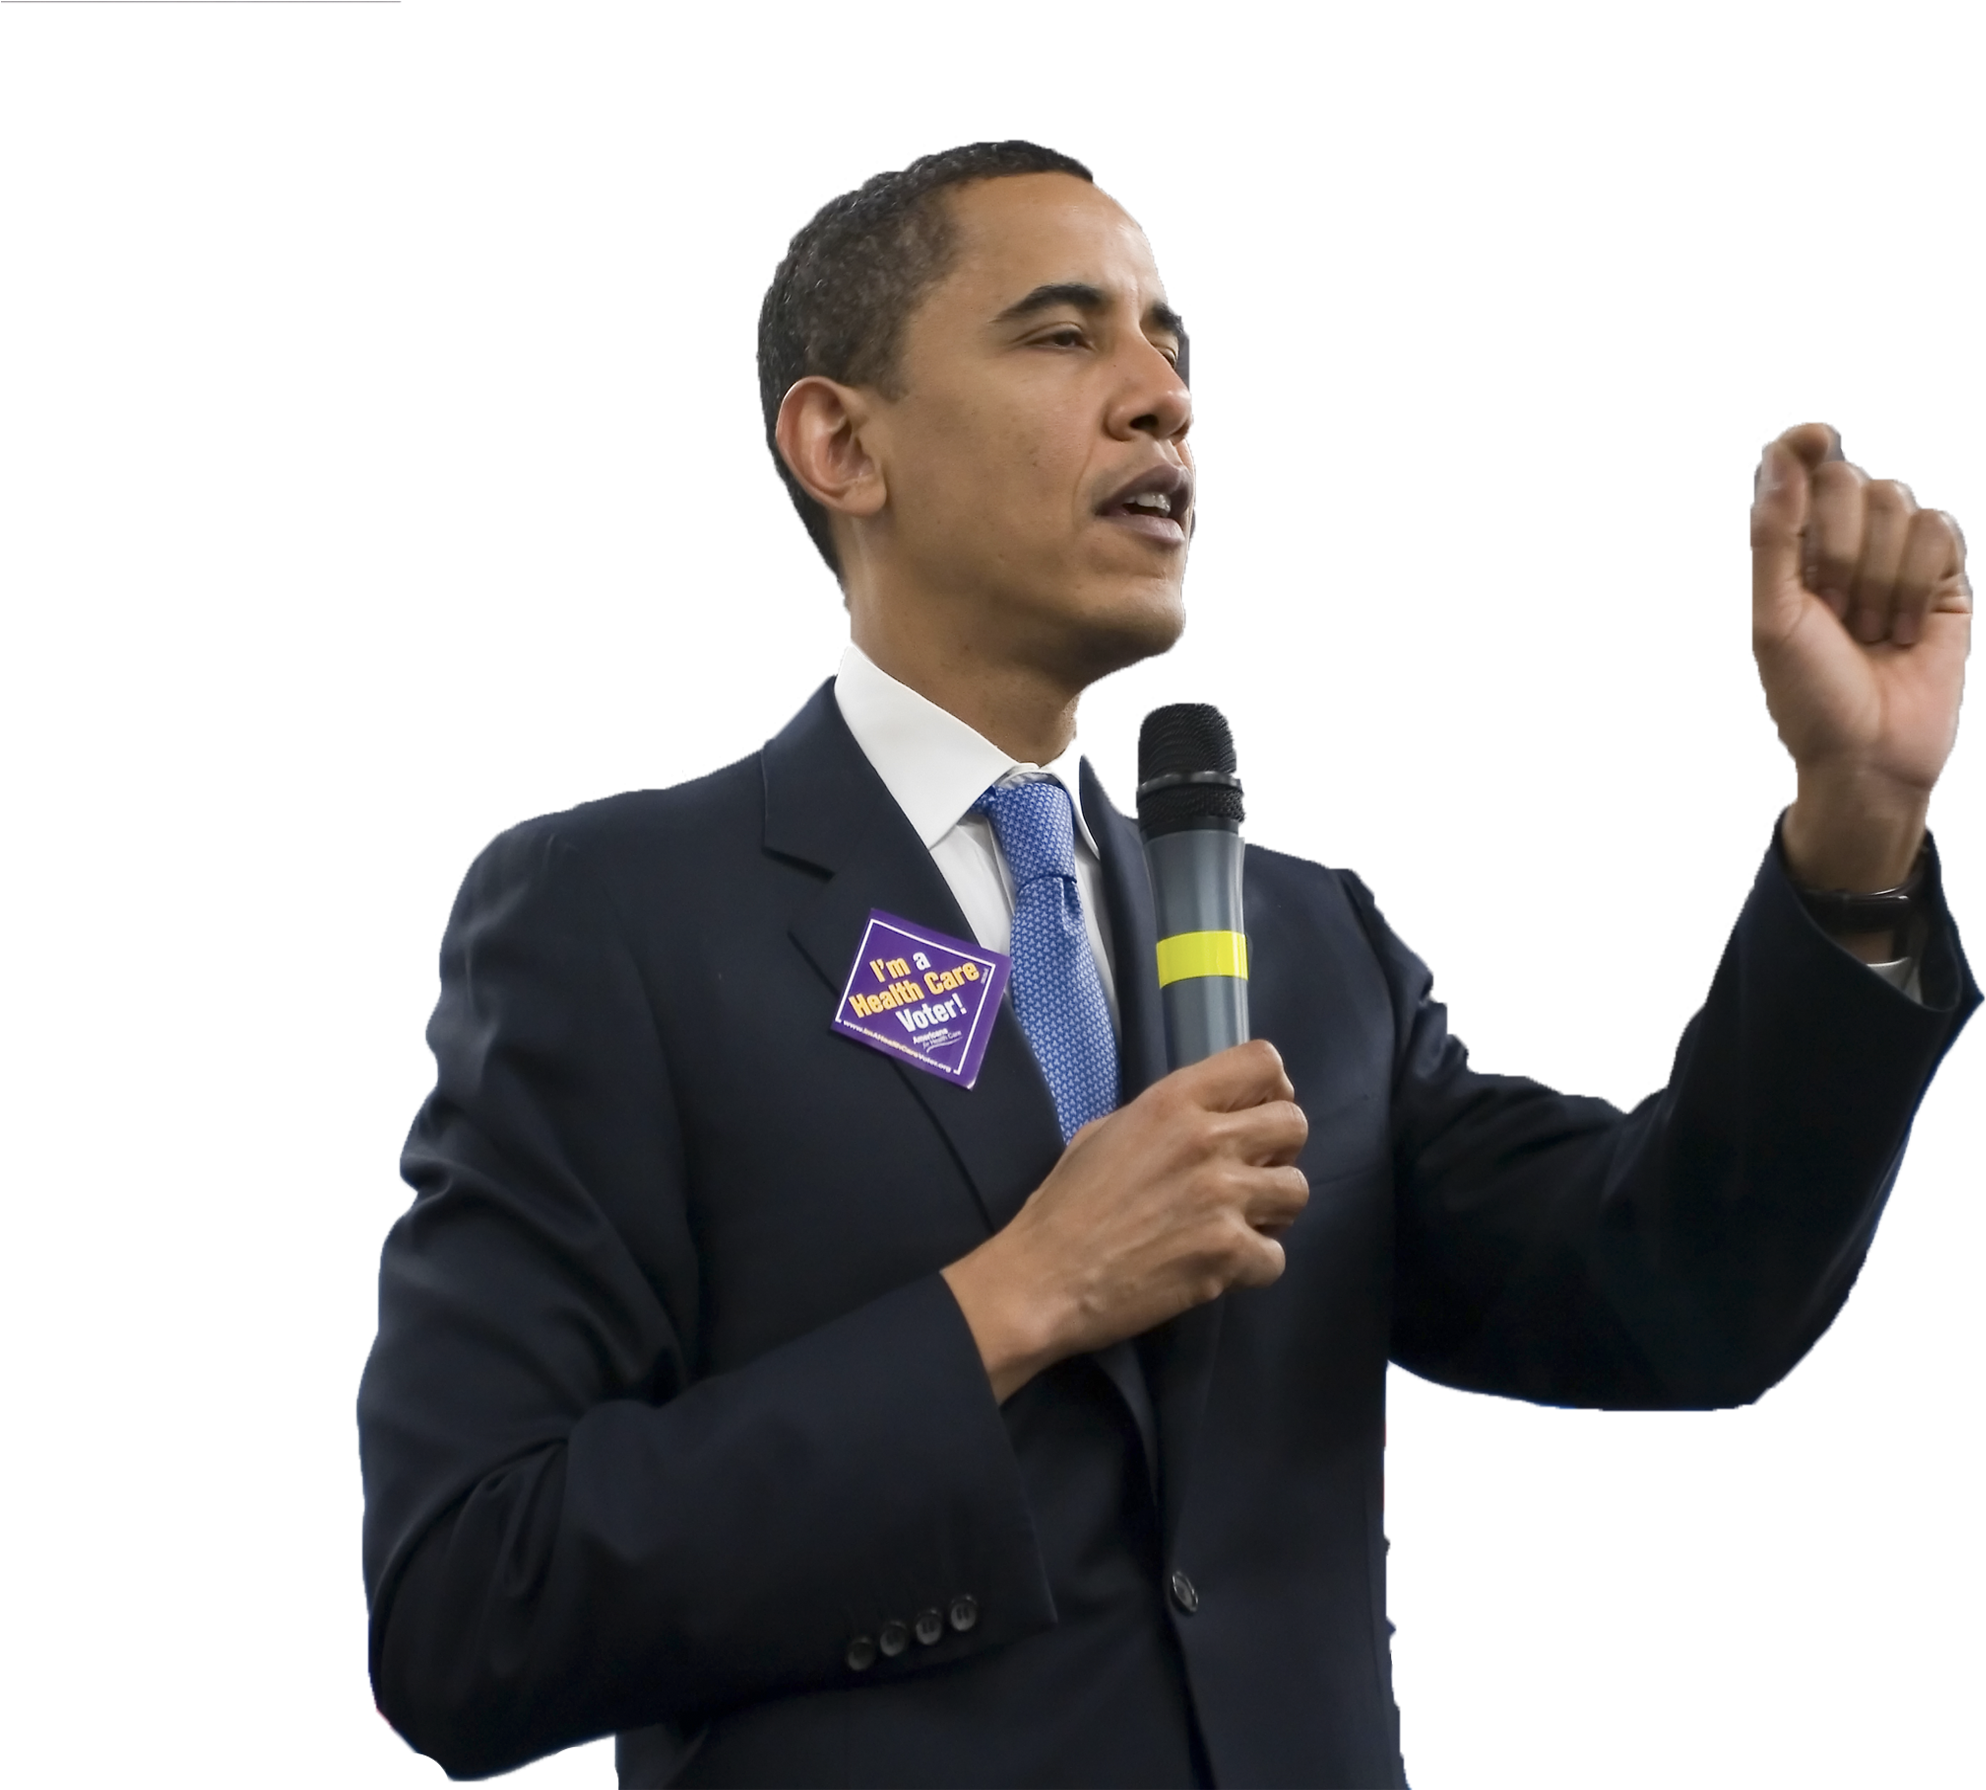 Barack Obama Speakingwith Microphone